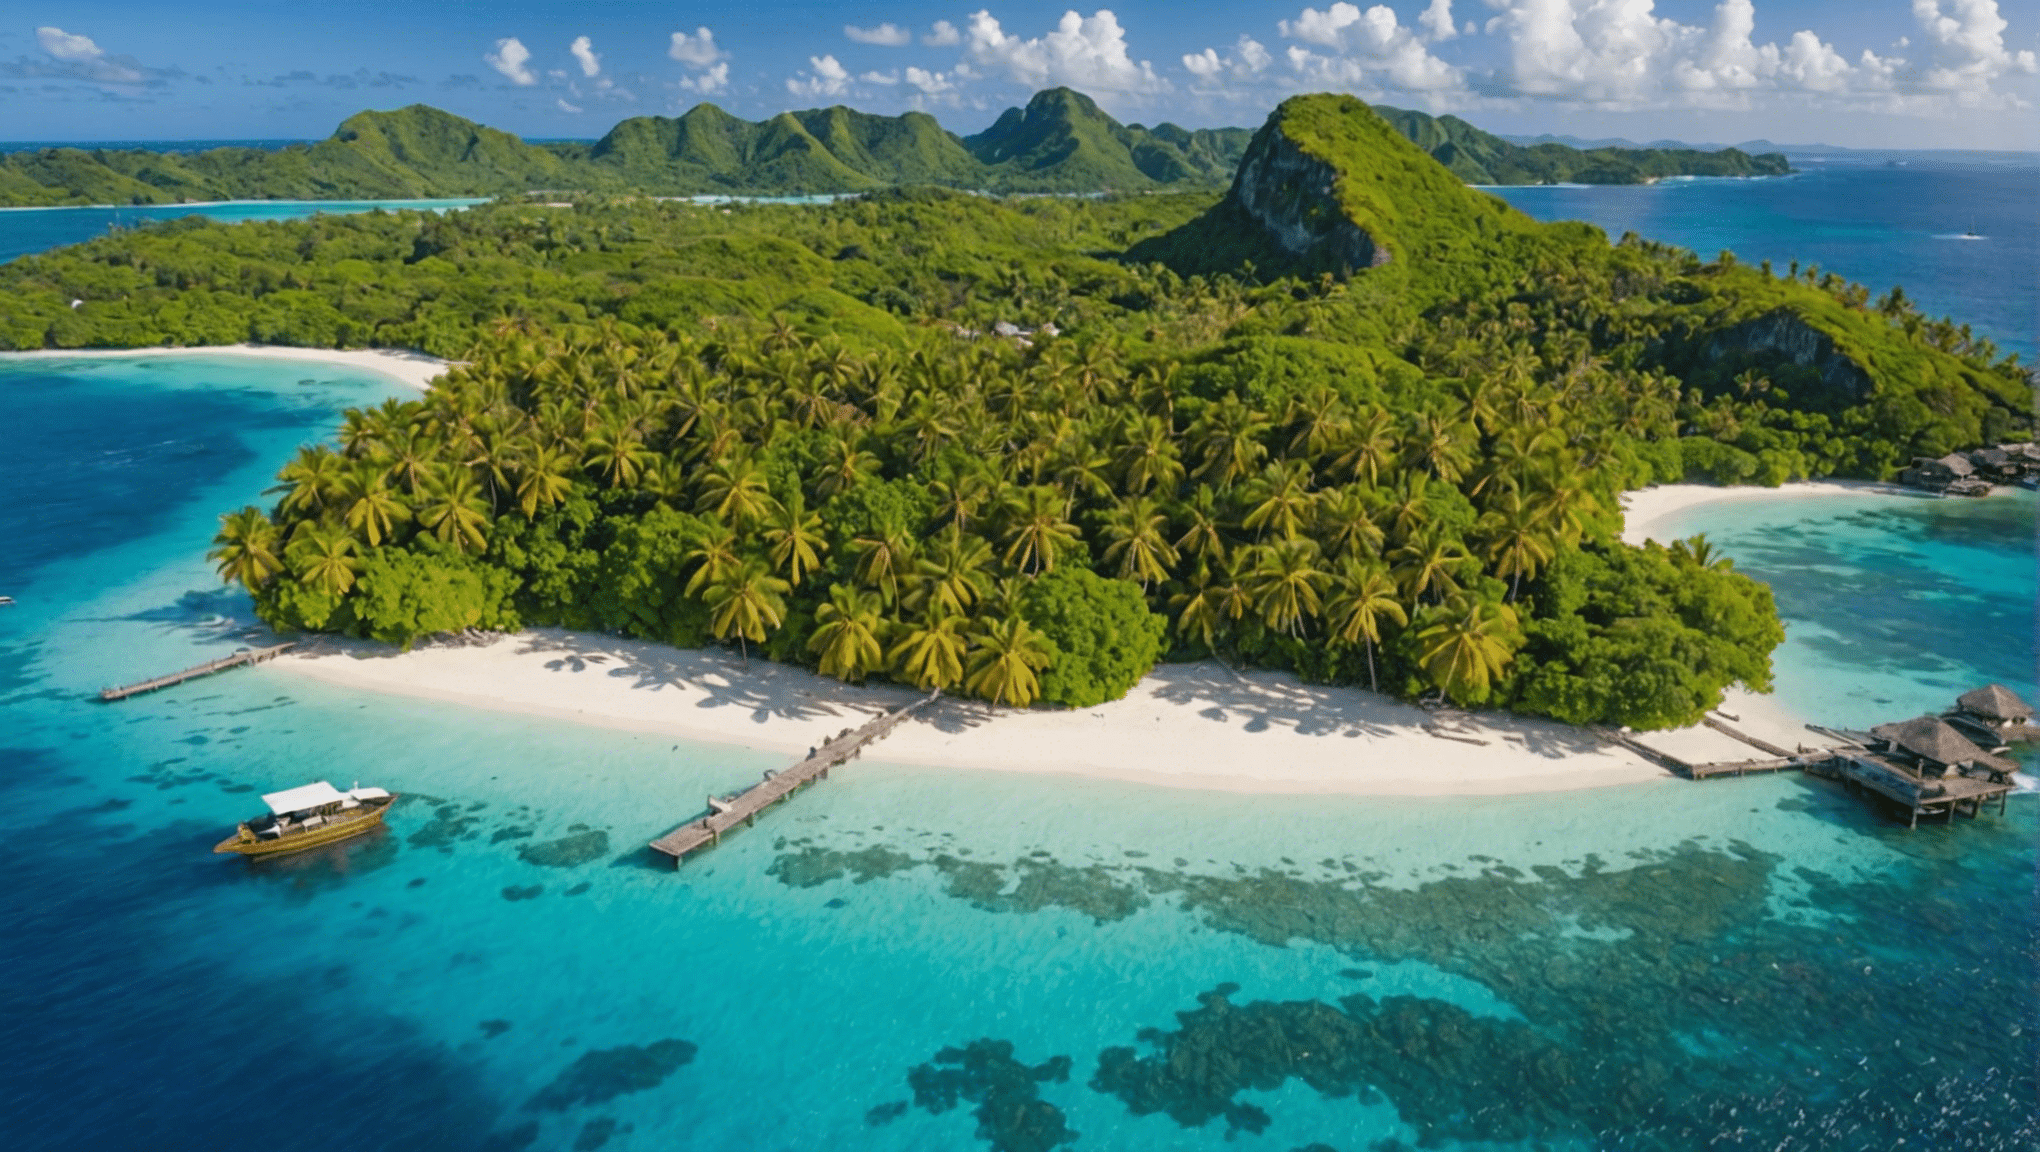 اكتشف أفضل 10 جزر الجنة التي يمكنك زيارتها مرة واحدة على الأقل في حياتك، ودع نفسك يستمتع بجمال وجهات الأحلام هذه.